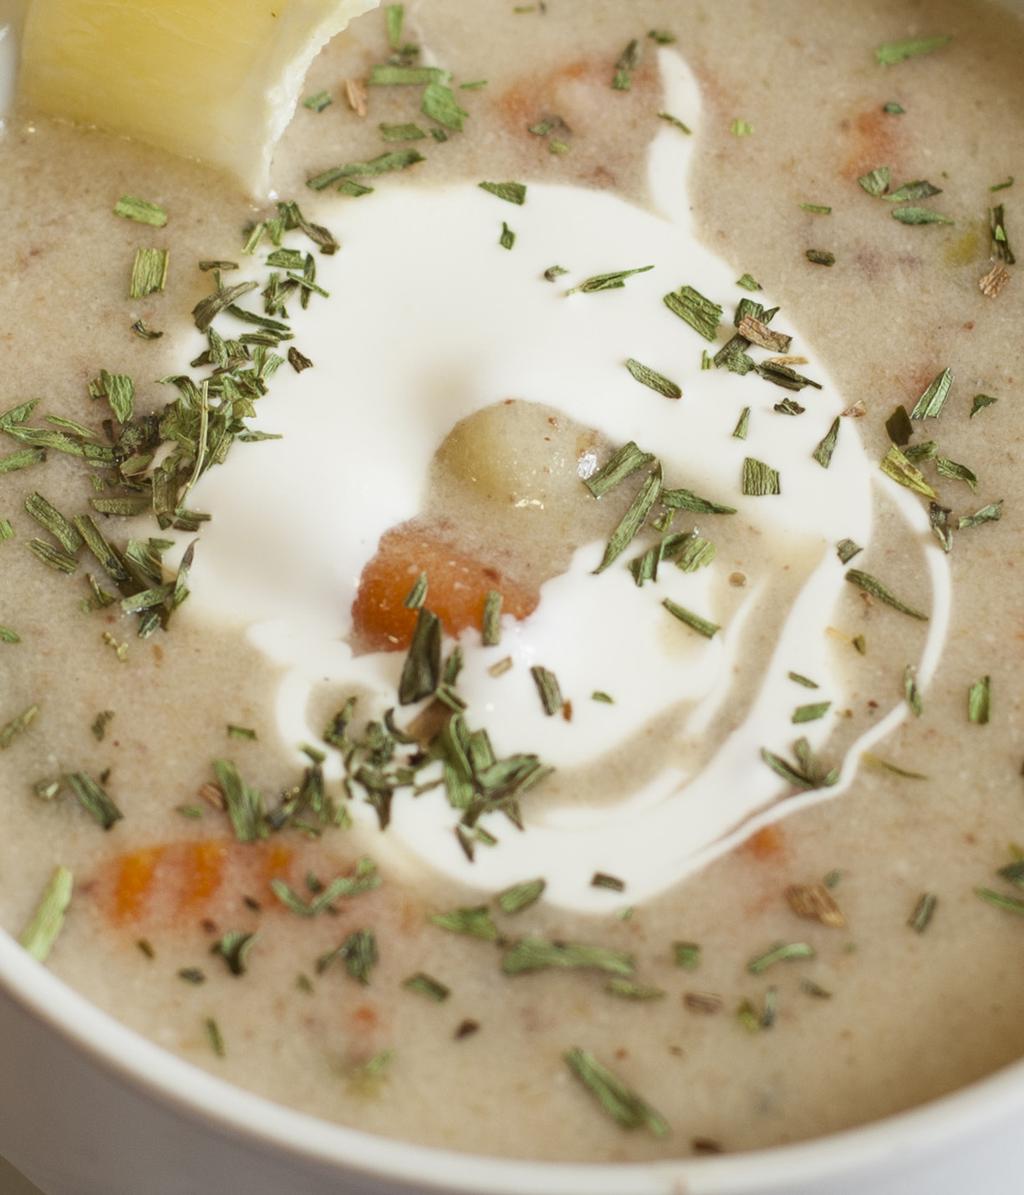 - Knoblauchcremesuppe Garlic cream soup HIDEG GYÜMÖLCSLEVES G 990.